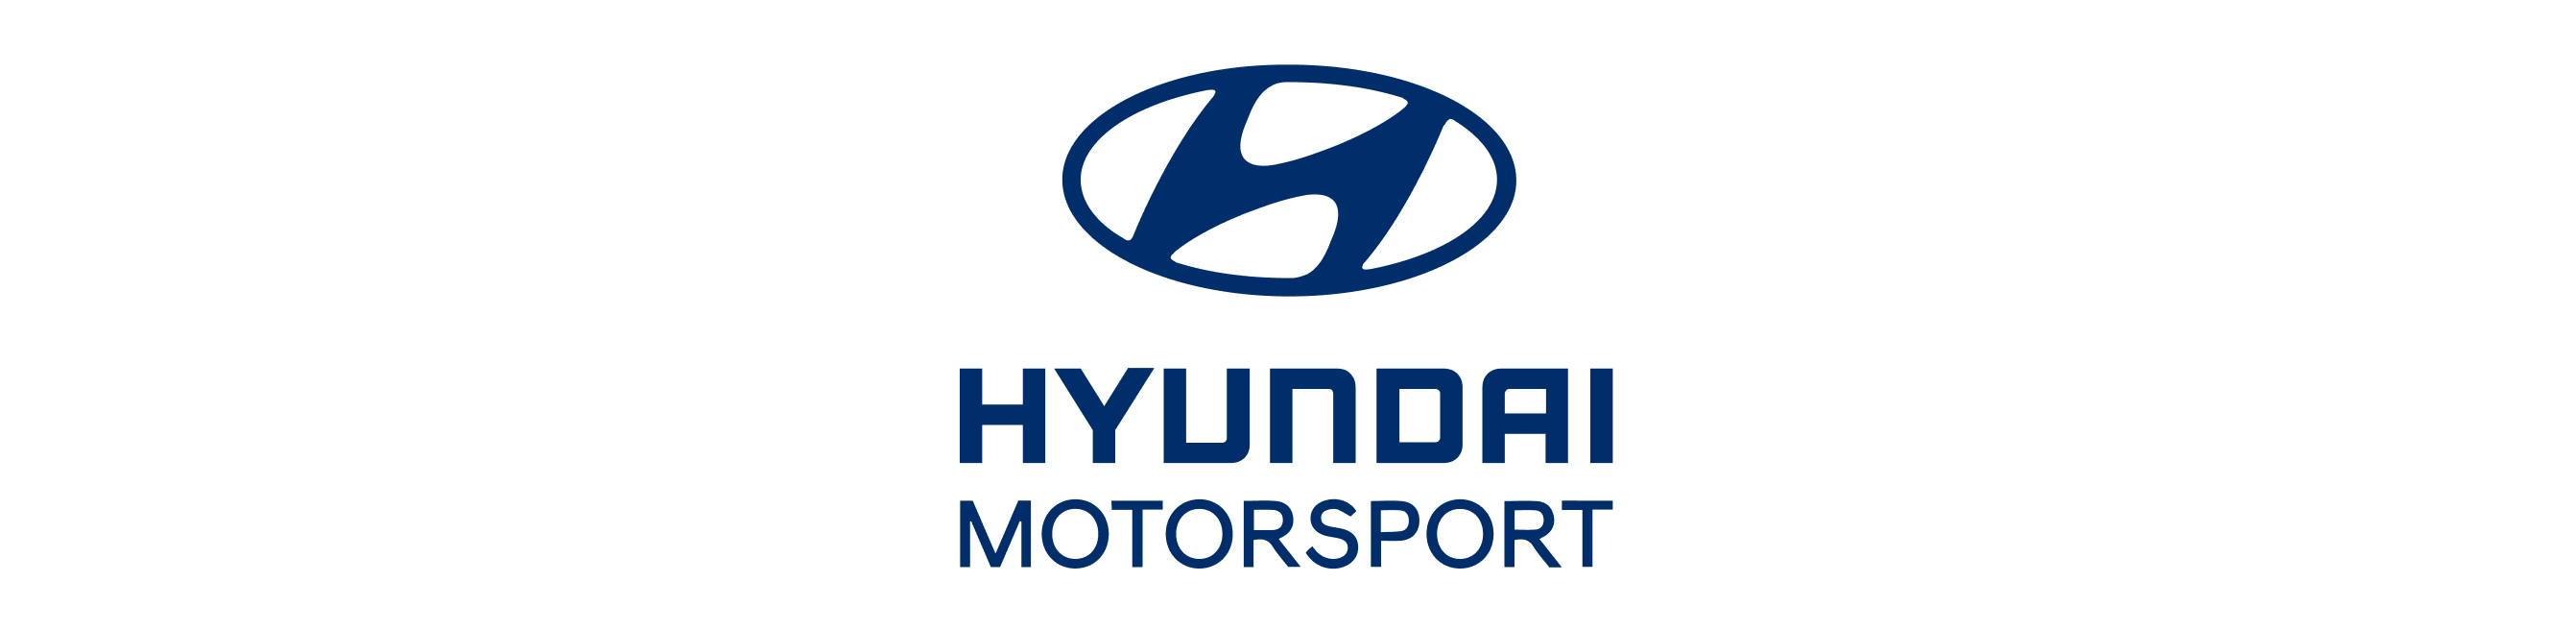 hyundai_motor